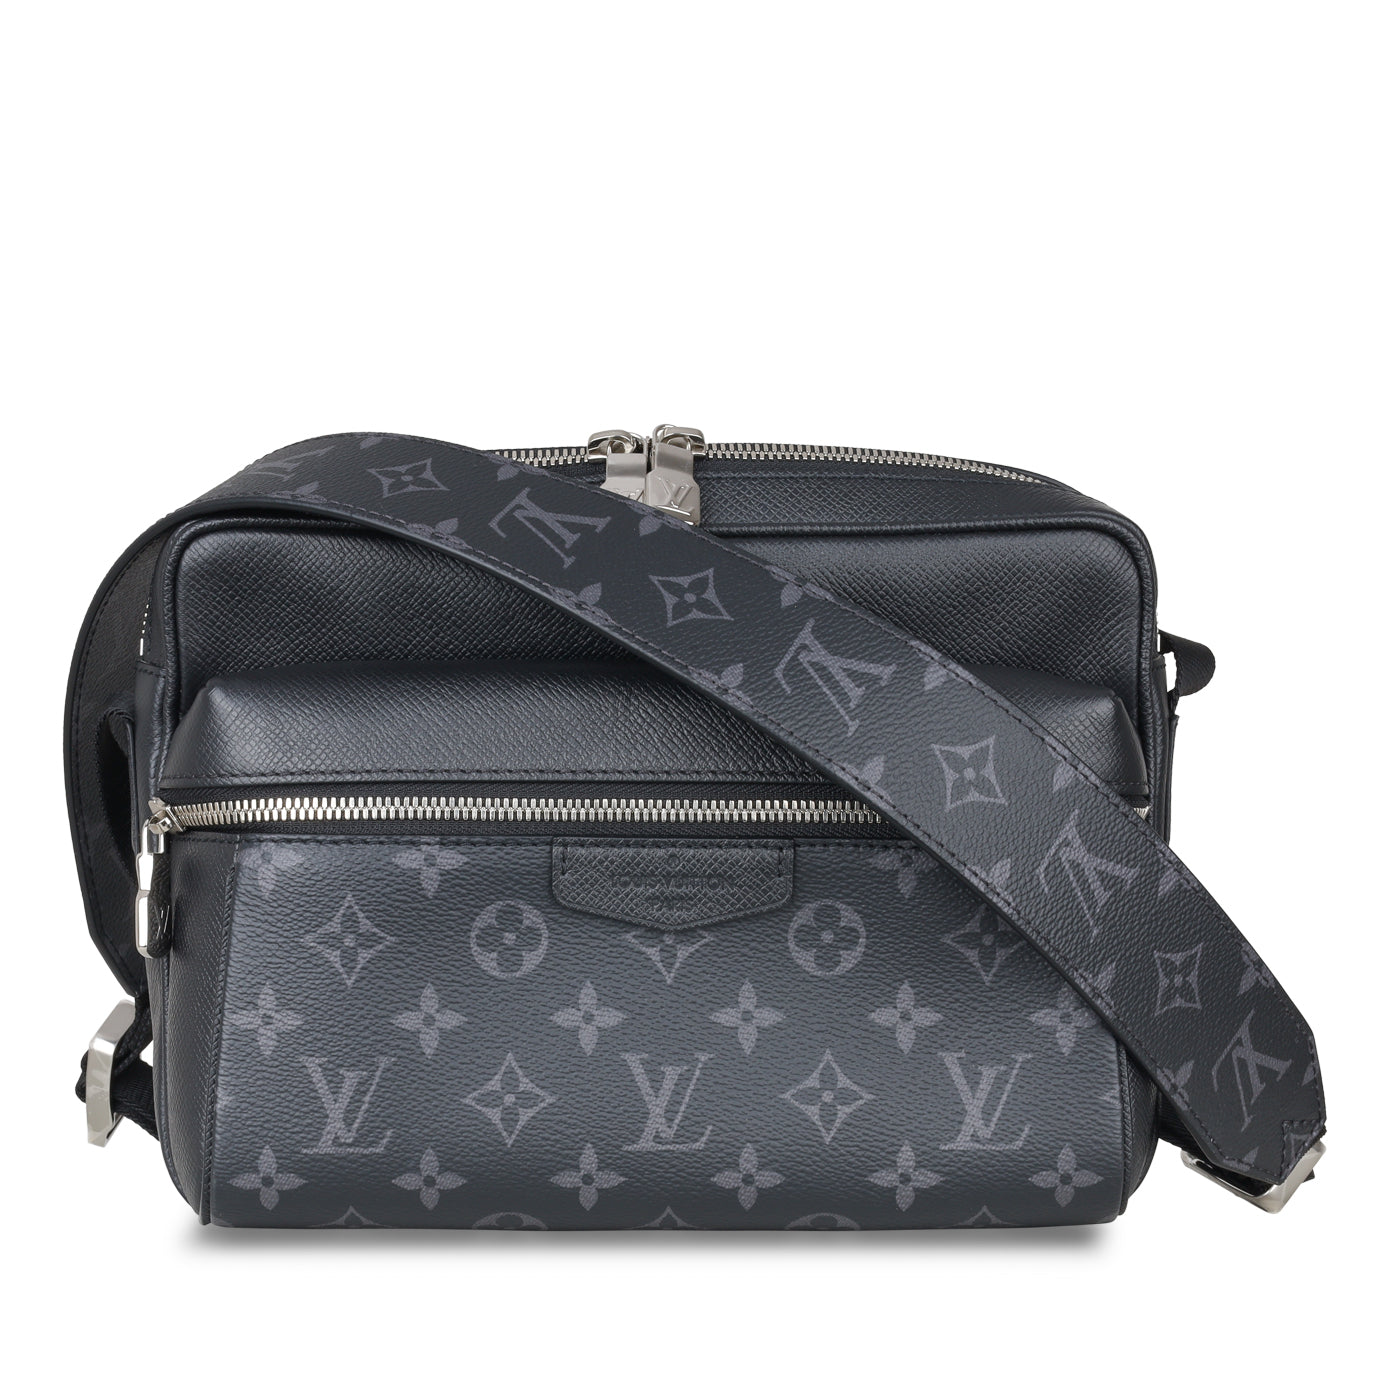 Tremble Gnaven marts Louis Vuitton - Outdoor Messenger Bag - Monogram Eclipse - Pre-Loved |  Bagista